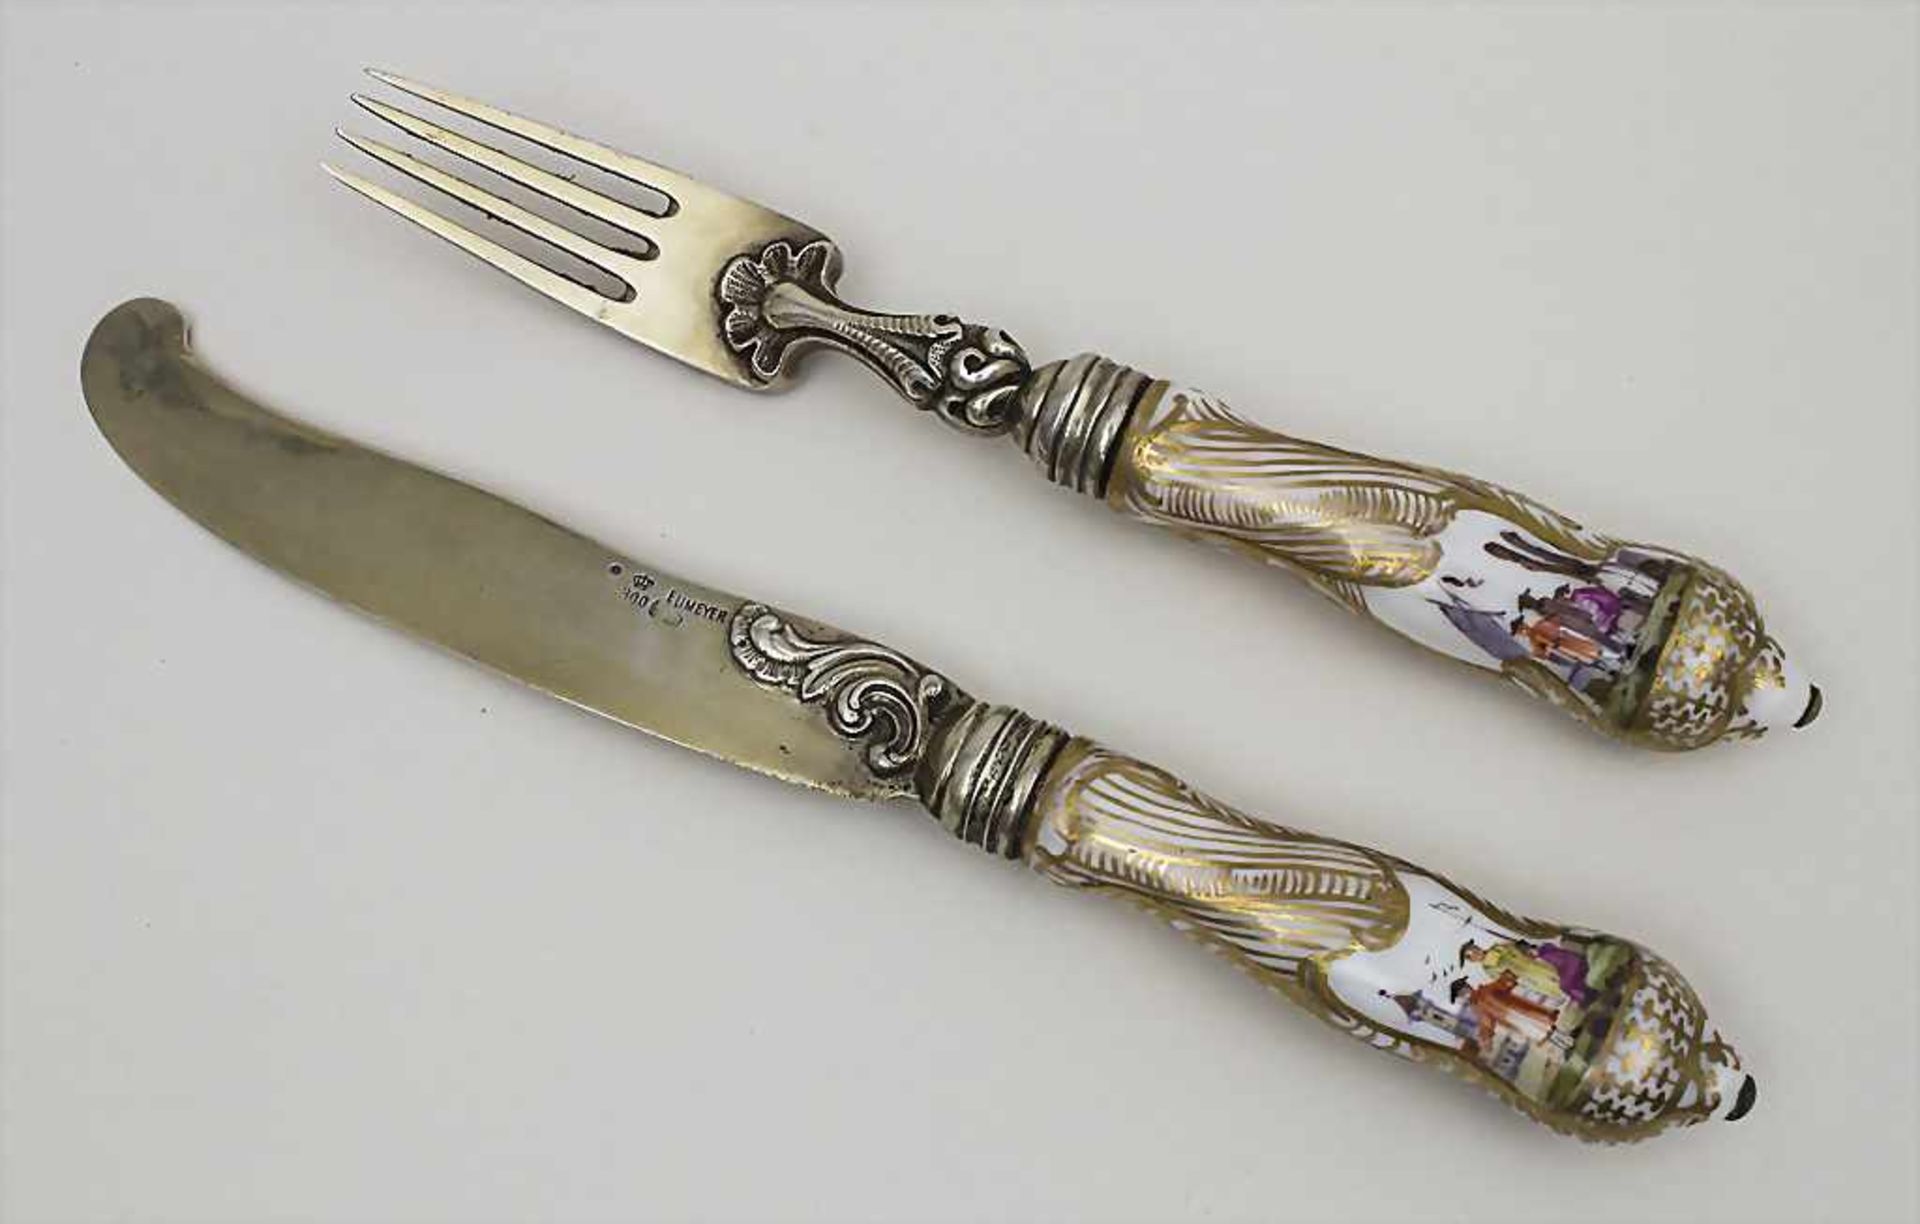 Messer und Gabel mit Kauffahrteiszenen / A knife and fork with porcelain handles, Meissen/Eumeyer,